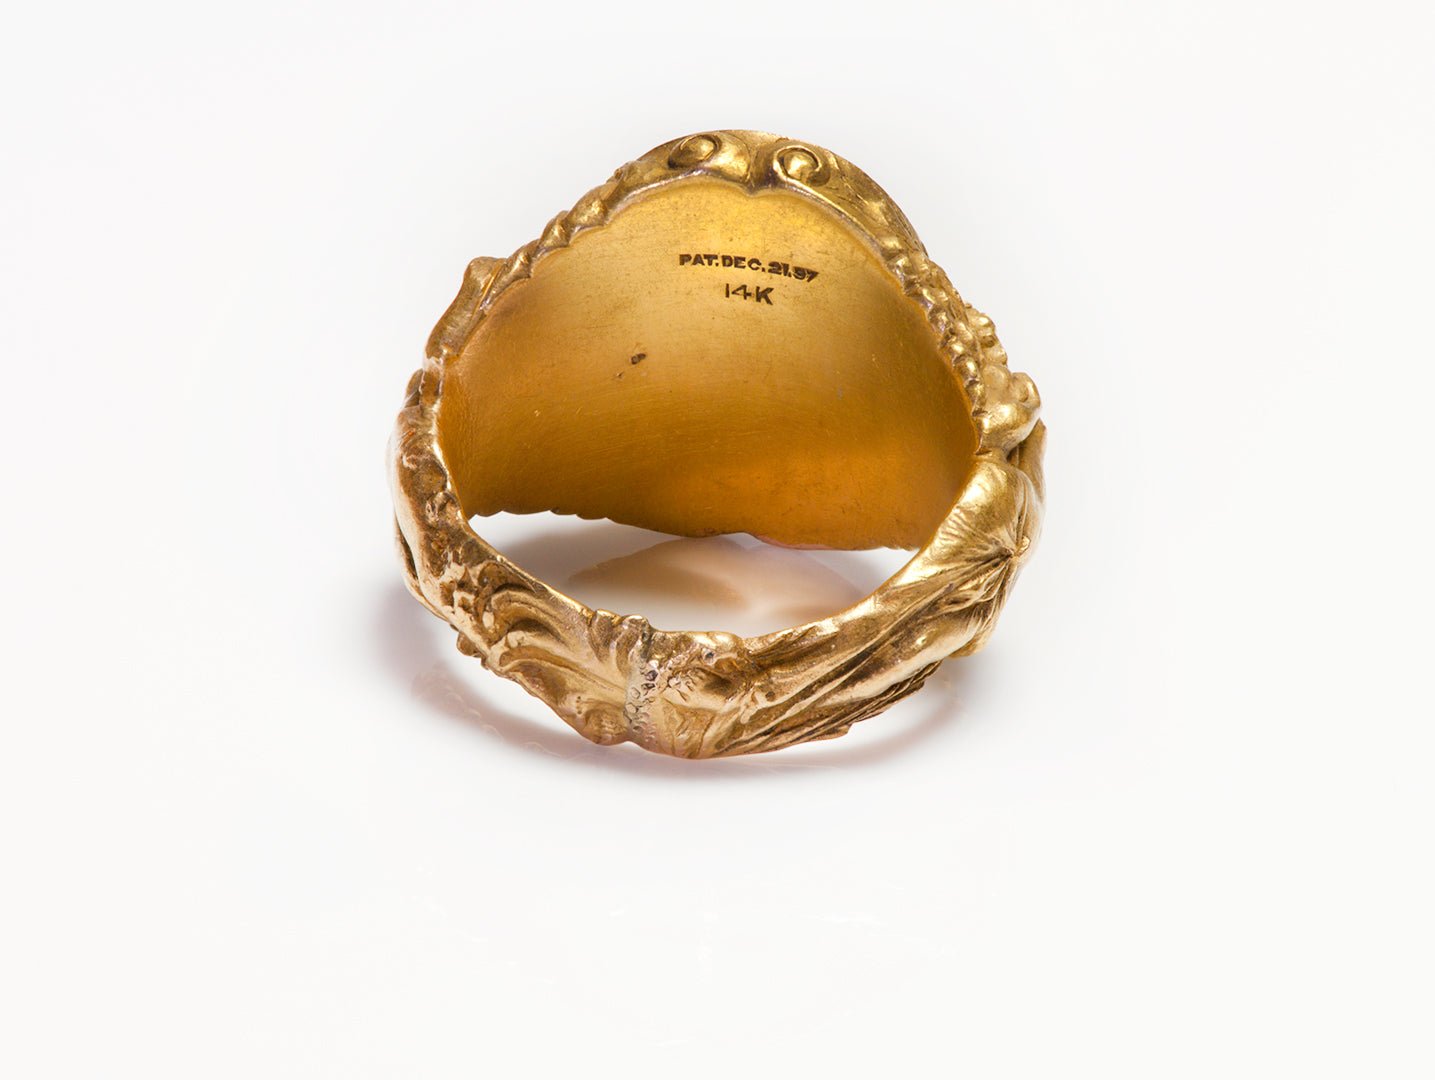 Antique Art Nouveau Gold Intaglio Crest Ring